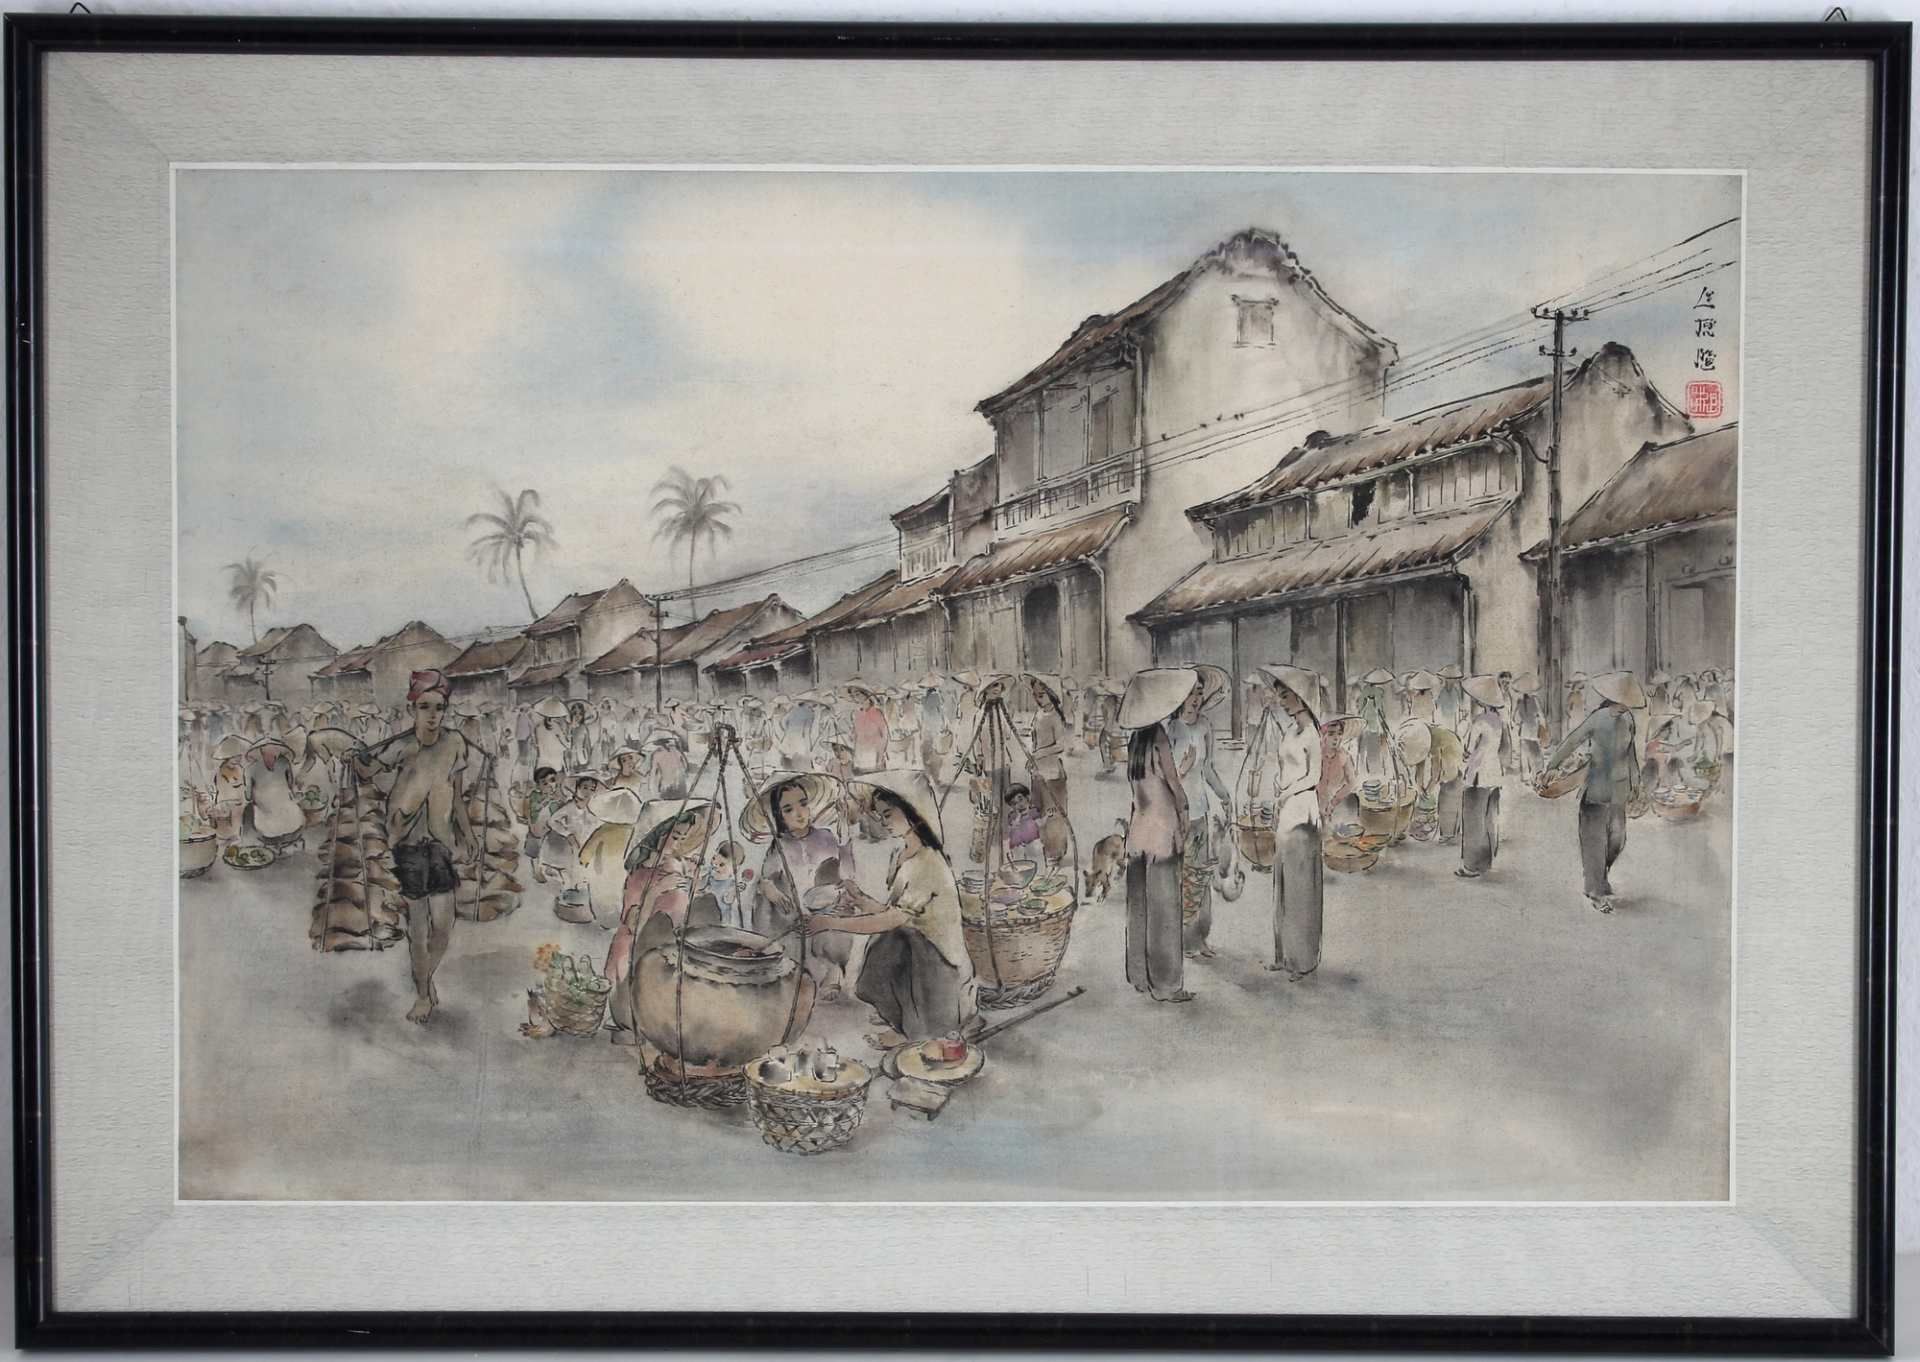 Asien - Seidenmalerei belebte Marktszene, silk painting busy market scene, - Image 2 of 3